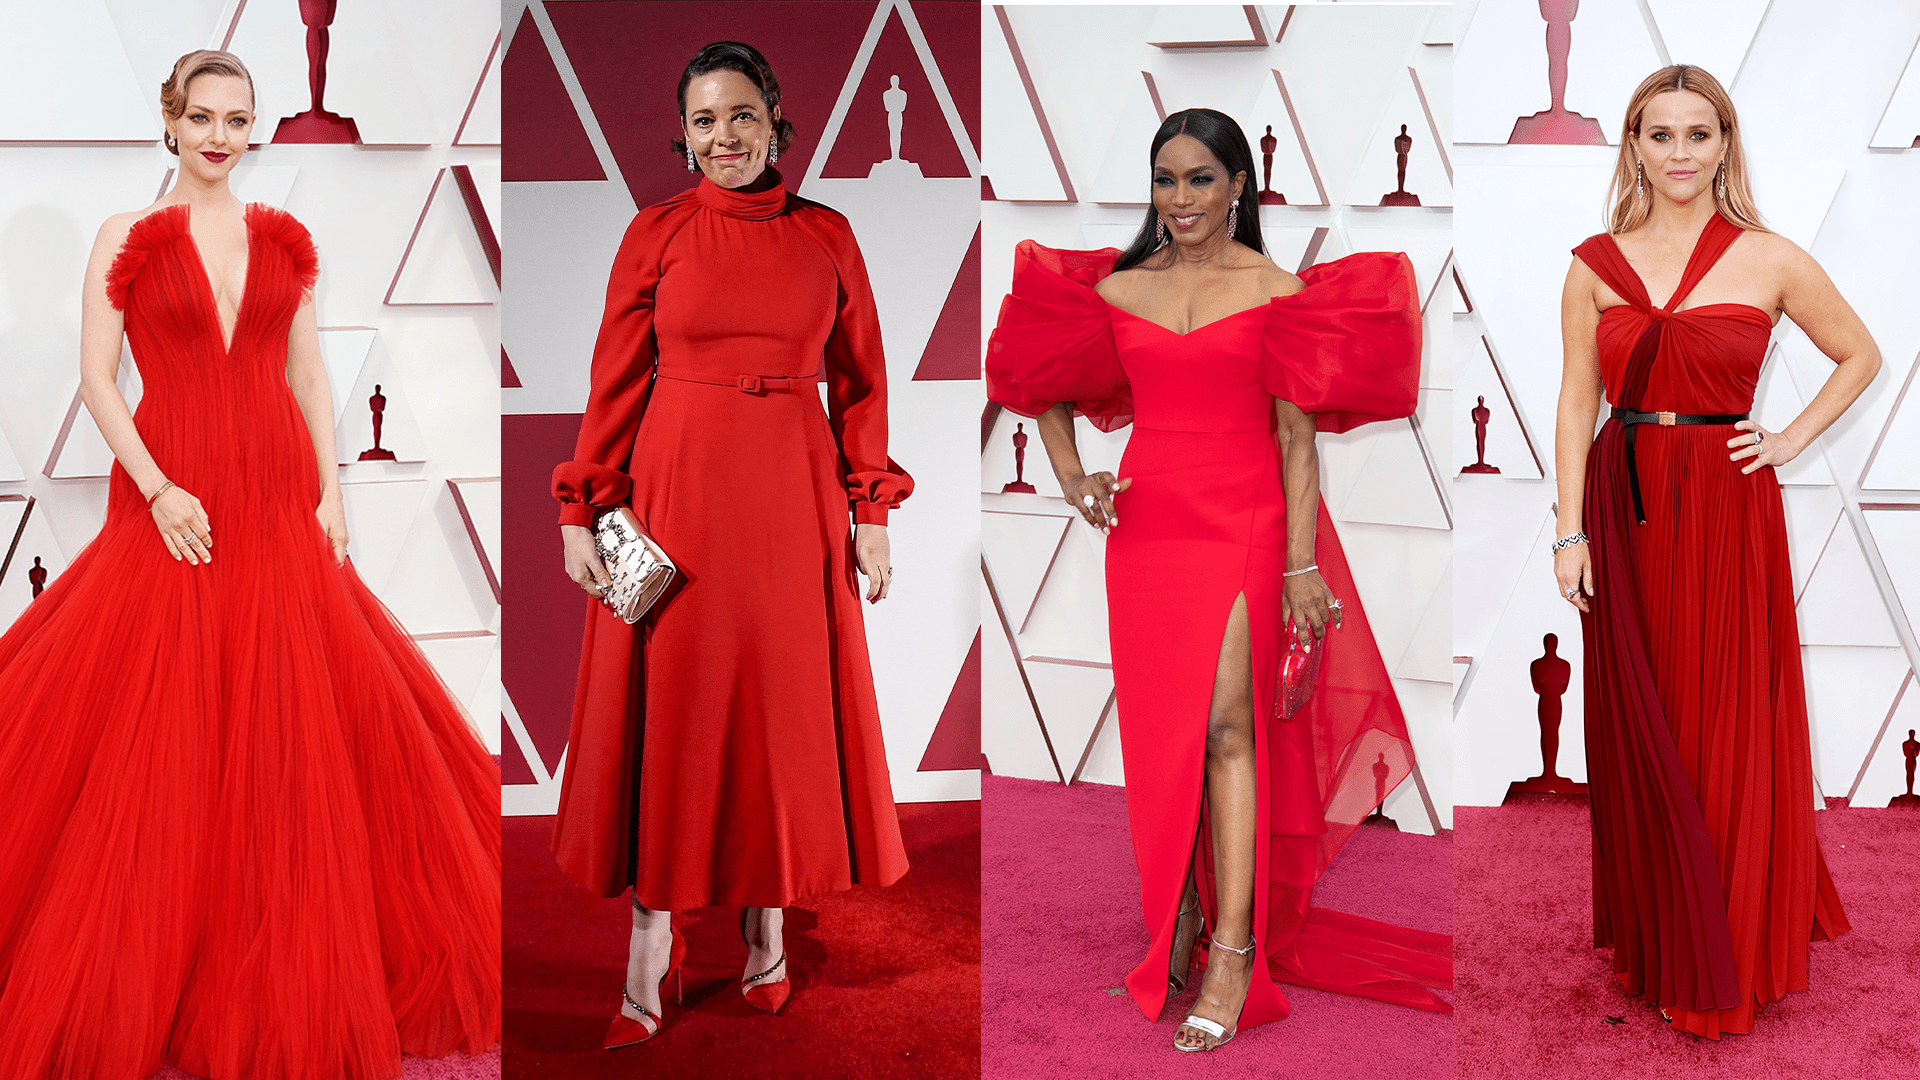 Předávání cen Oscar ovládla červená a rudá barva. Oblékly jí třeba herečky Reese Witherspoonová nebo Amanda Seyfriedová.